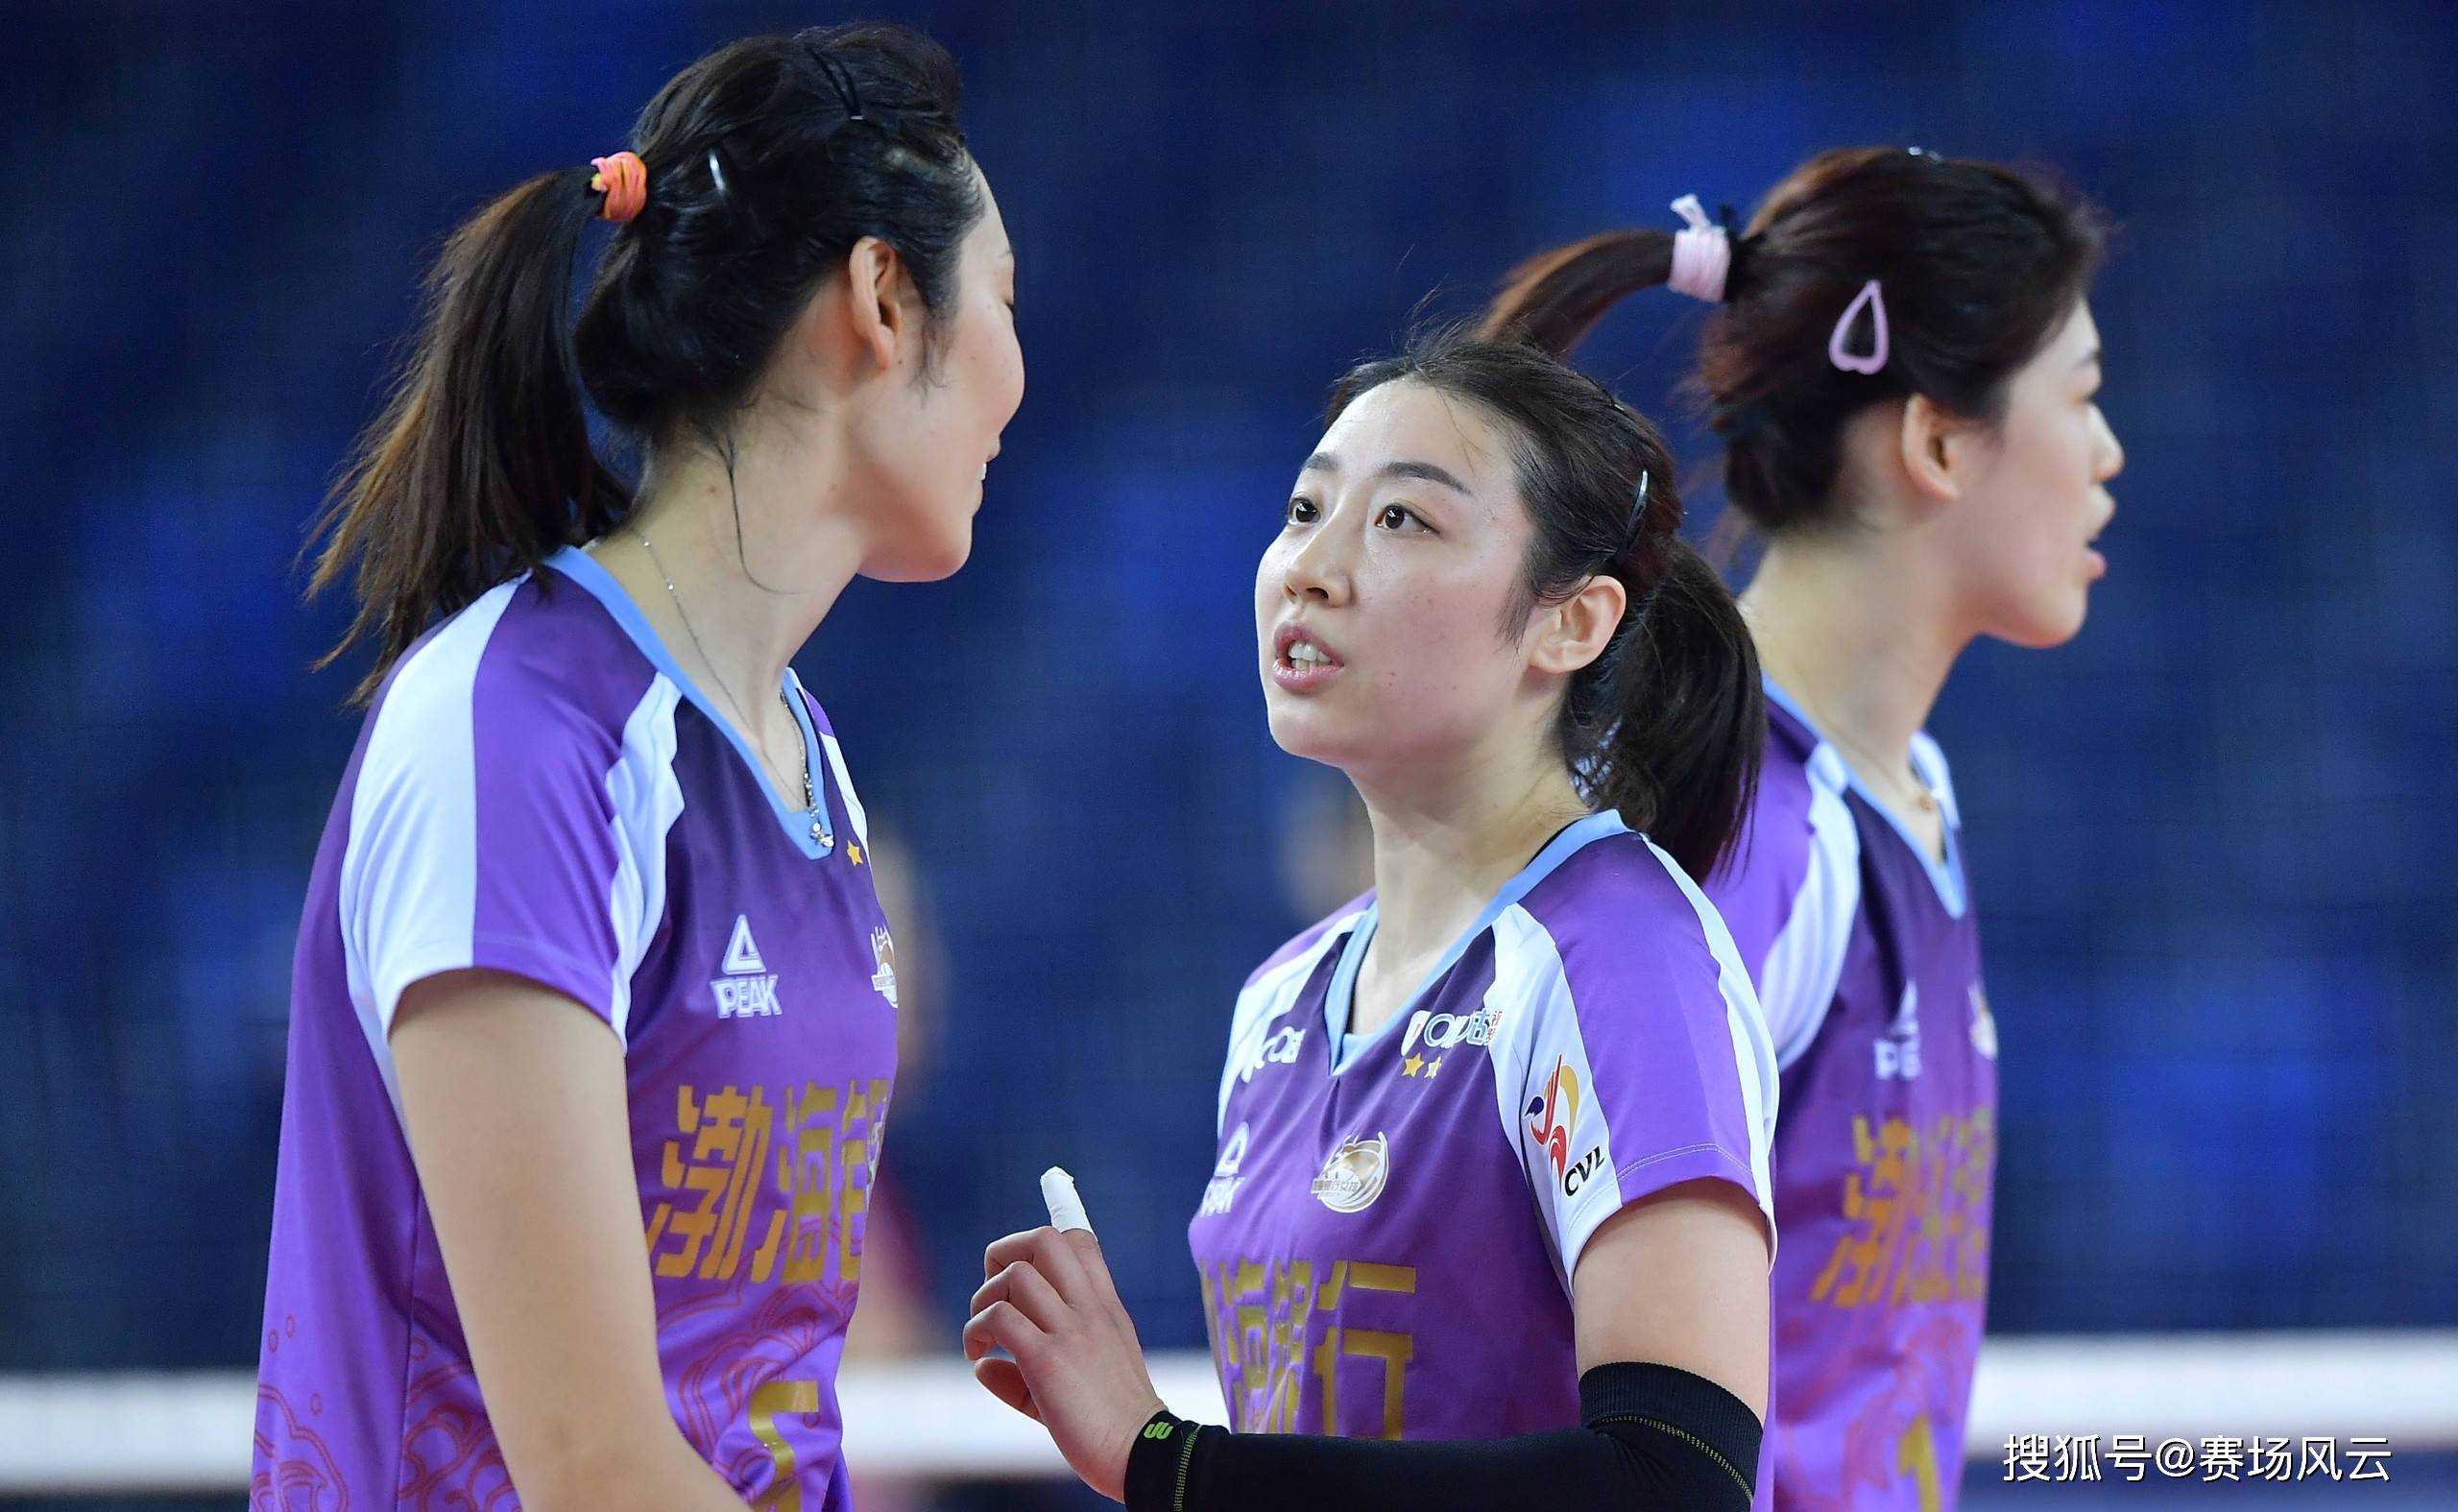 中国女排队员的平均身高世界第一,姚迪之所以打不好国家队的比赛,传球